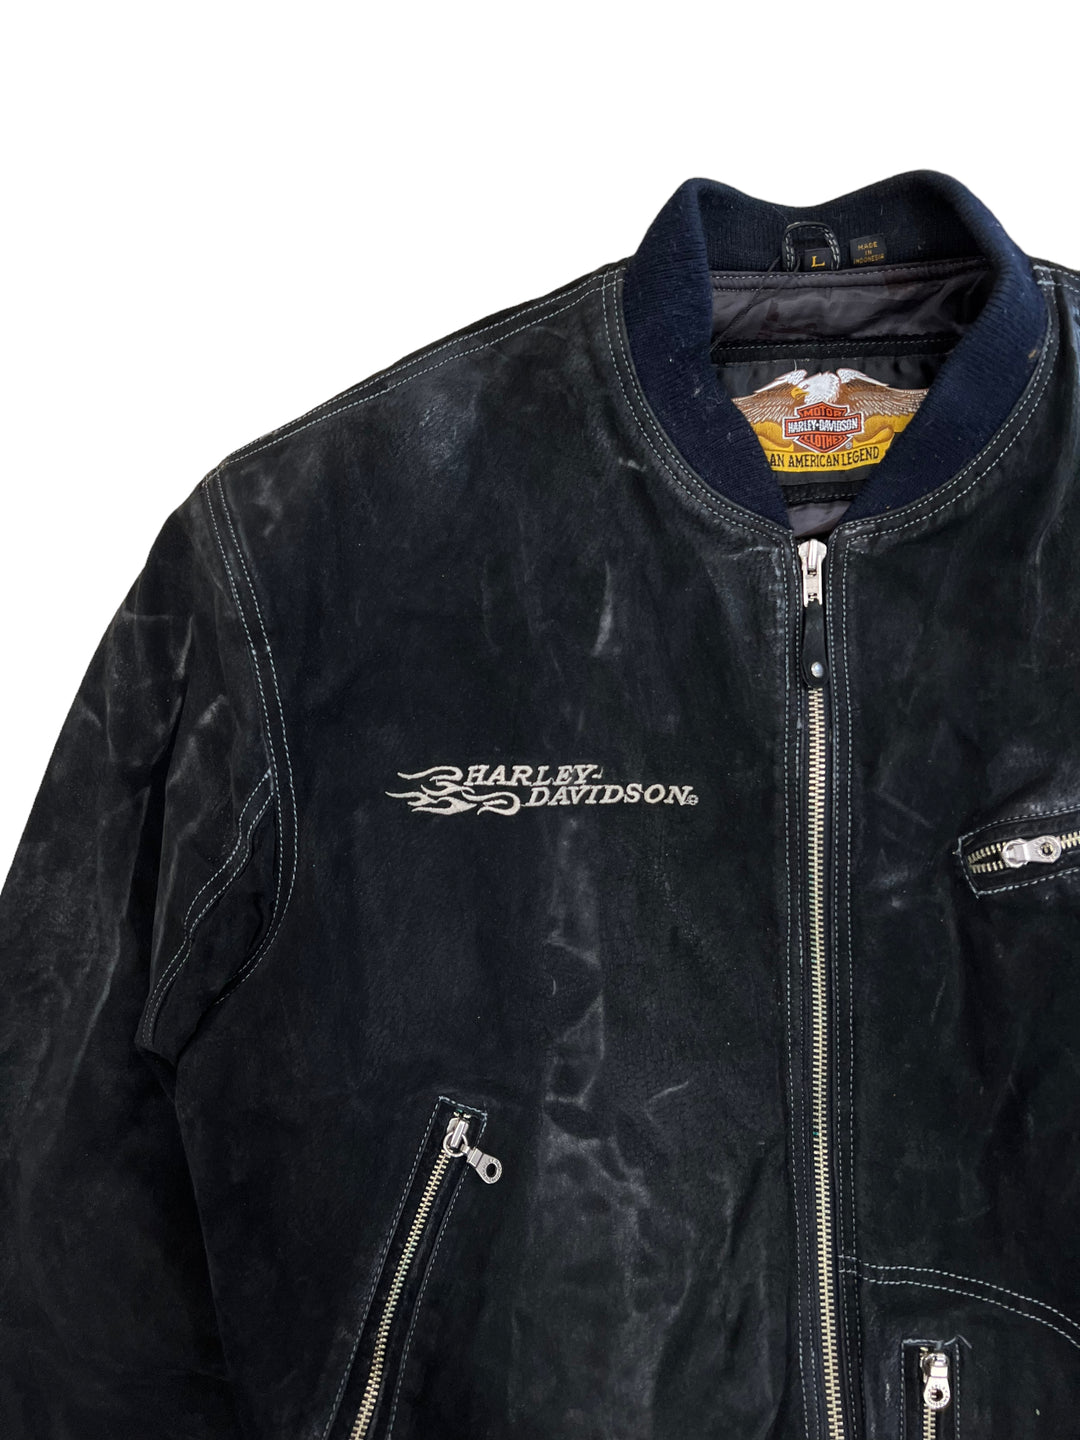 Harley-Davidson Black Suede Leather Jacket Men’s Large